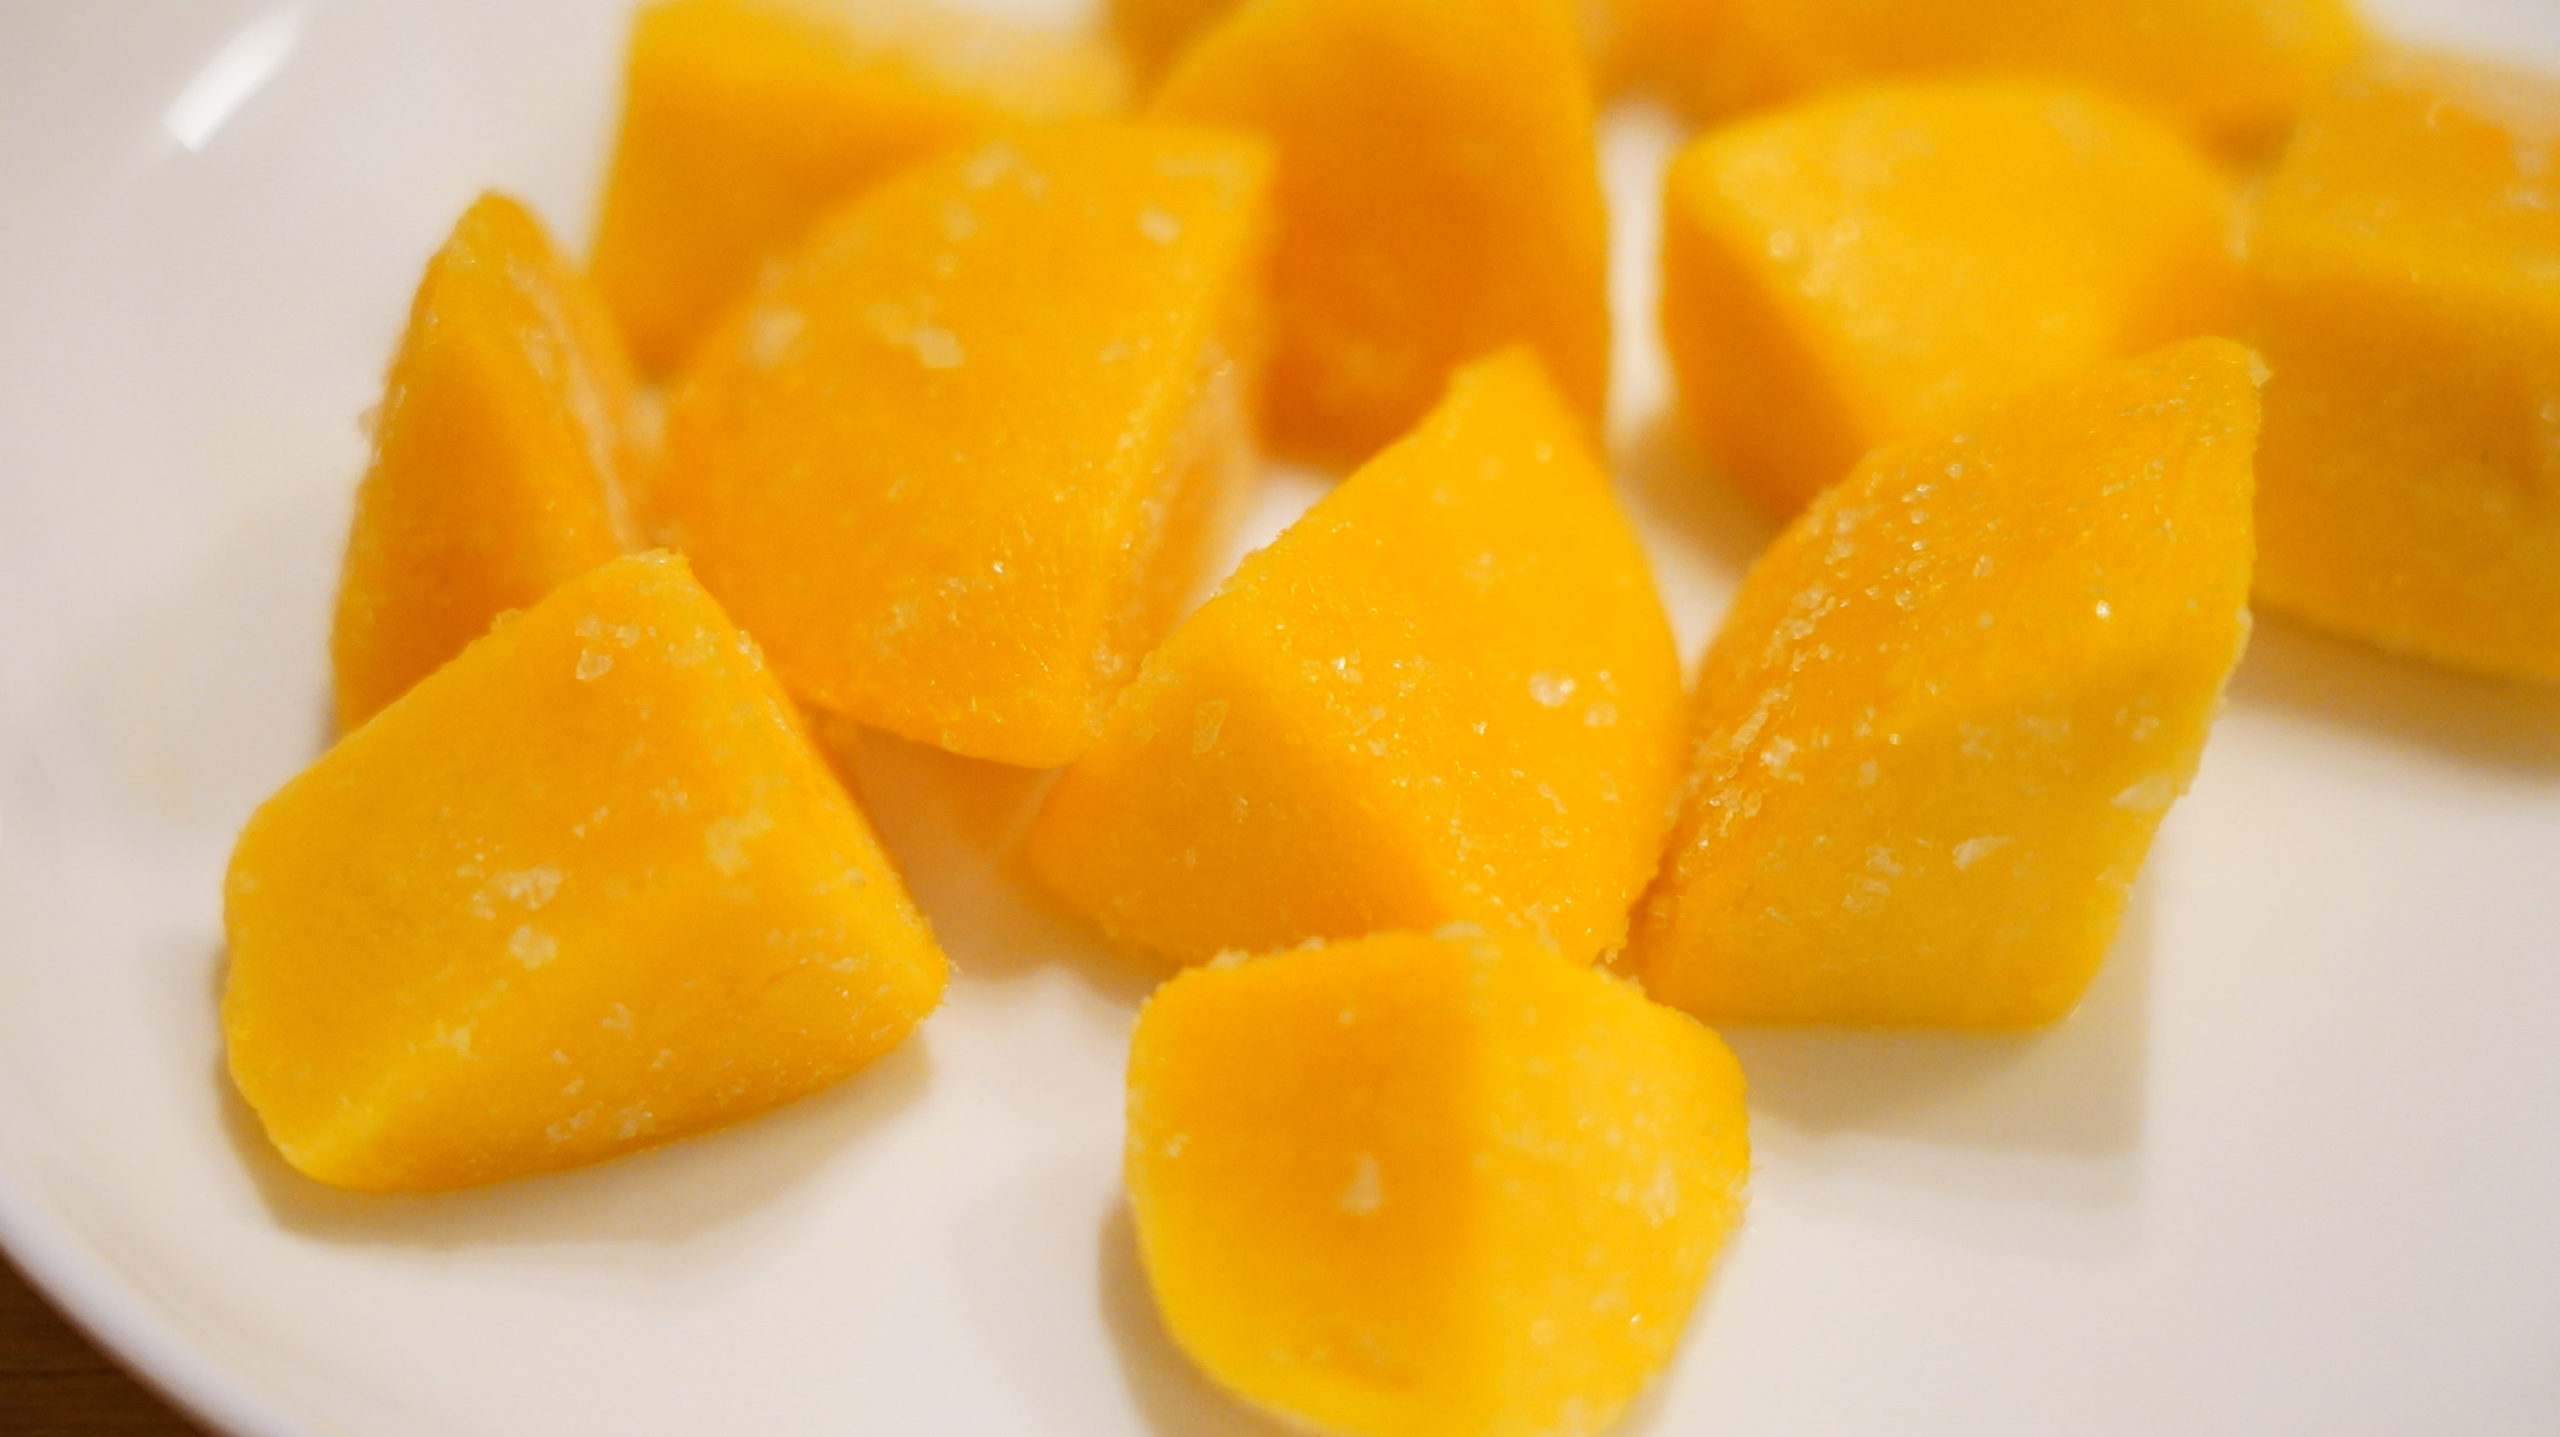 ファミリーマートの冷凍食品「DOLE・完熟マンゴー」の拡大写真